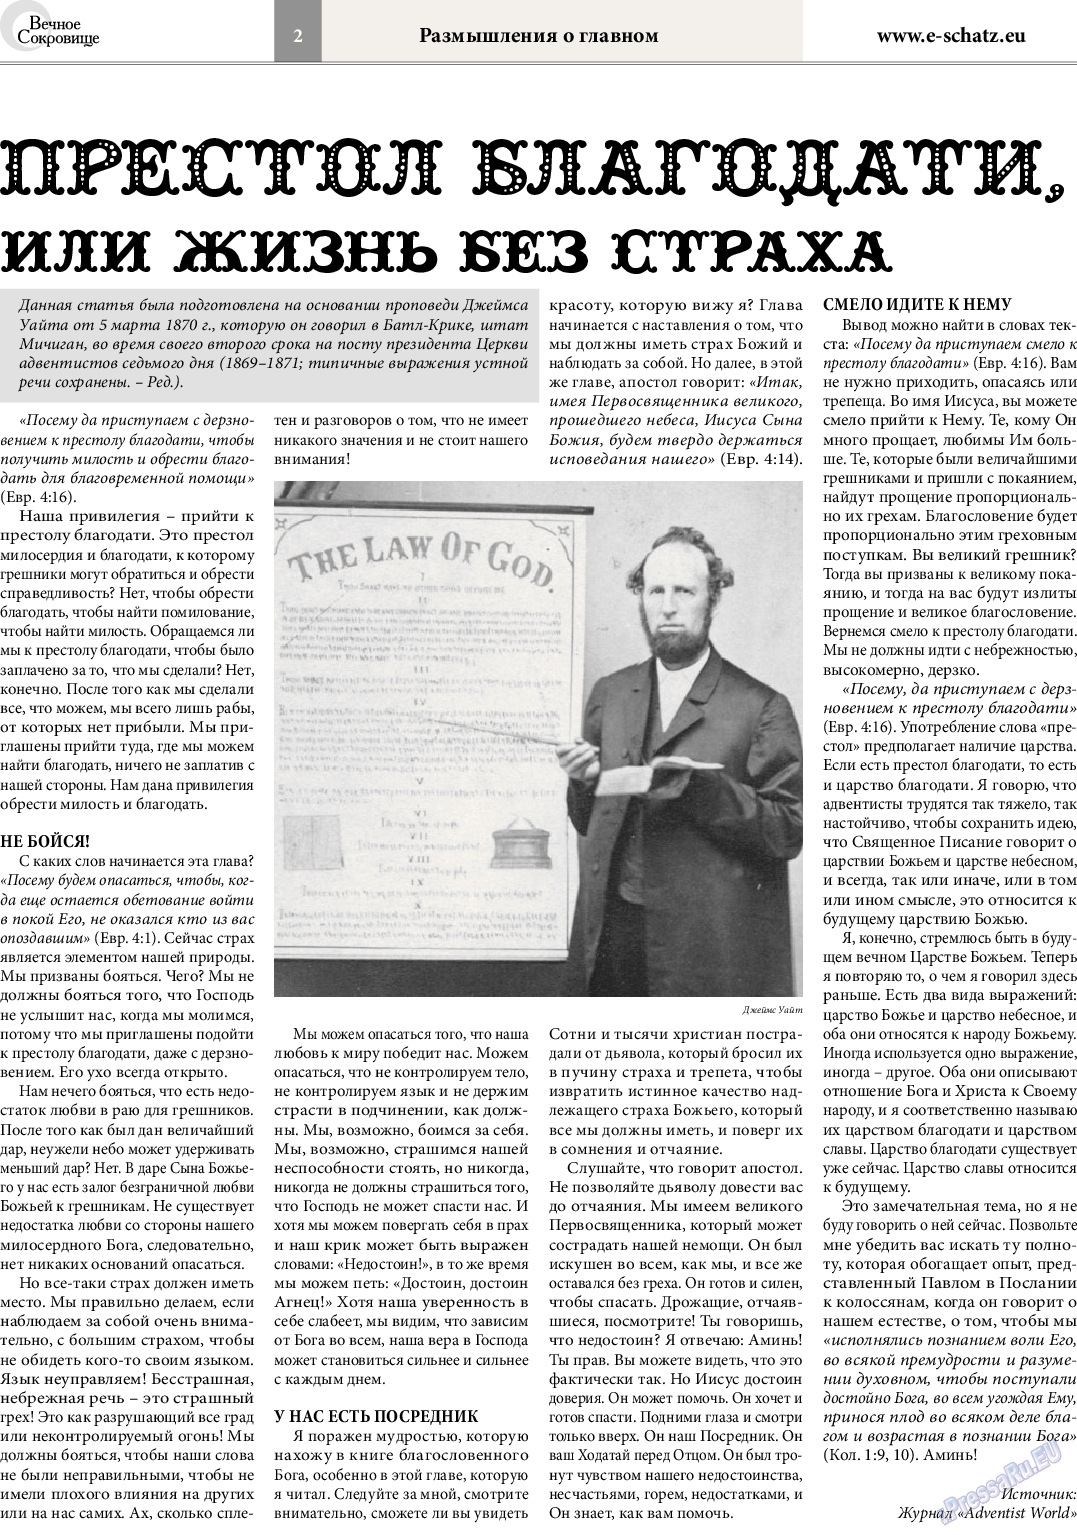 Вечное сокровище (газета). 2014 год, номер 4, стр. 2